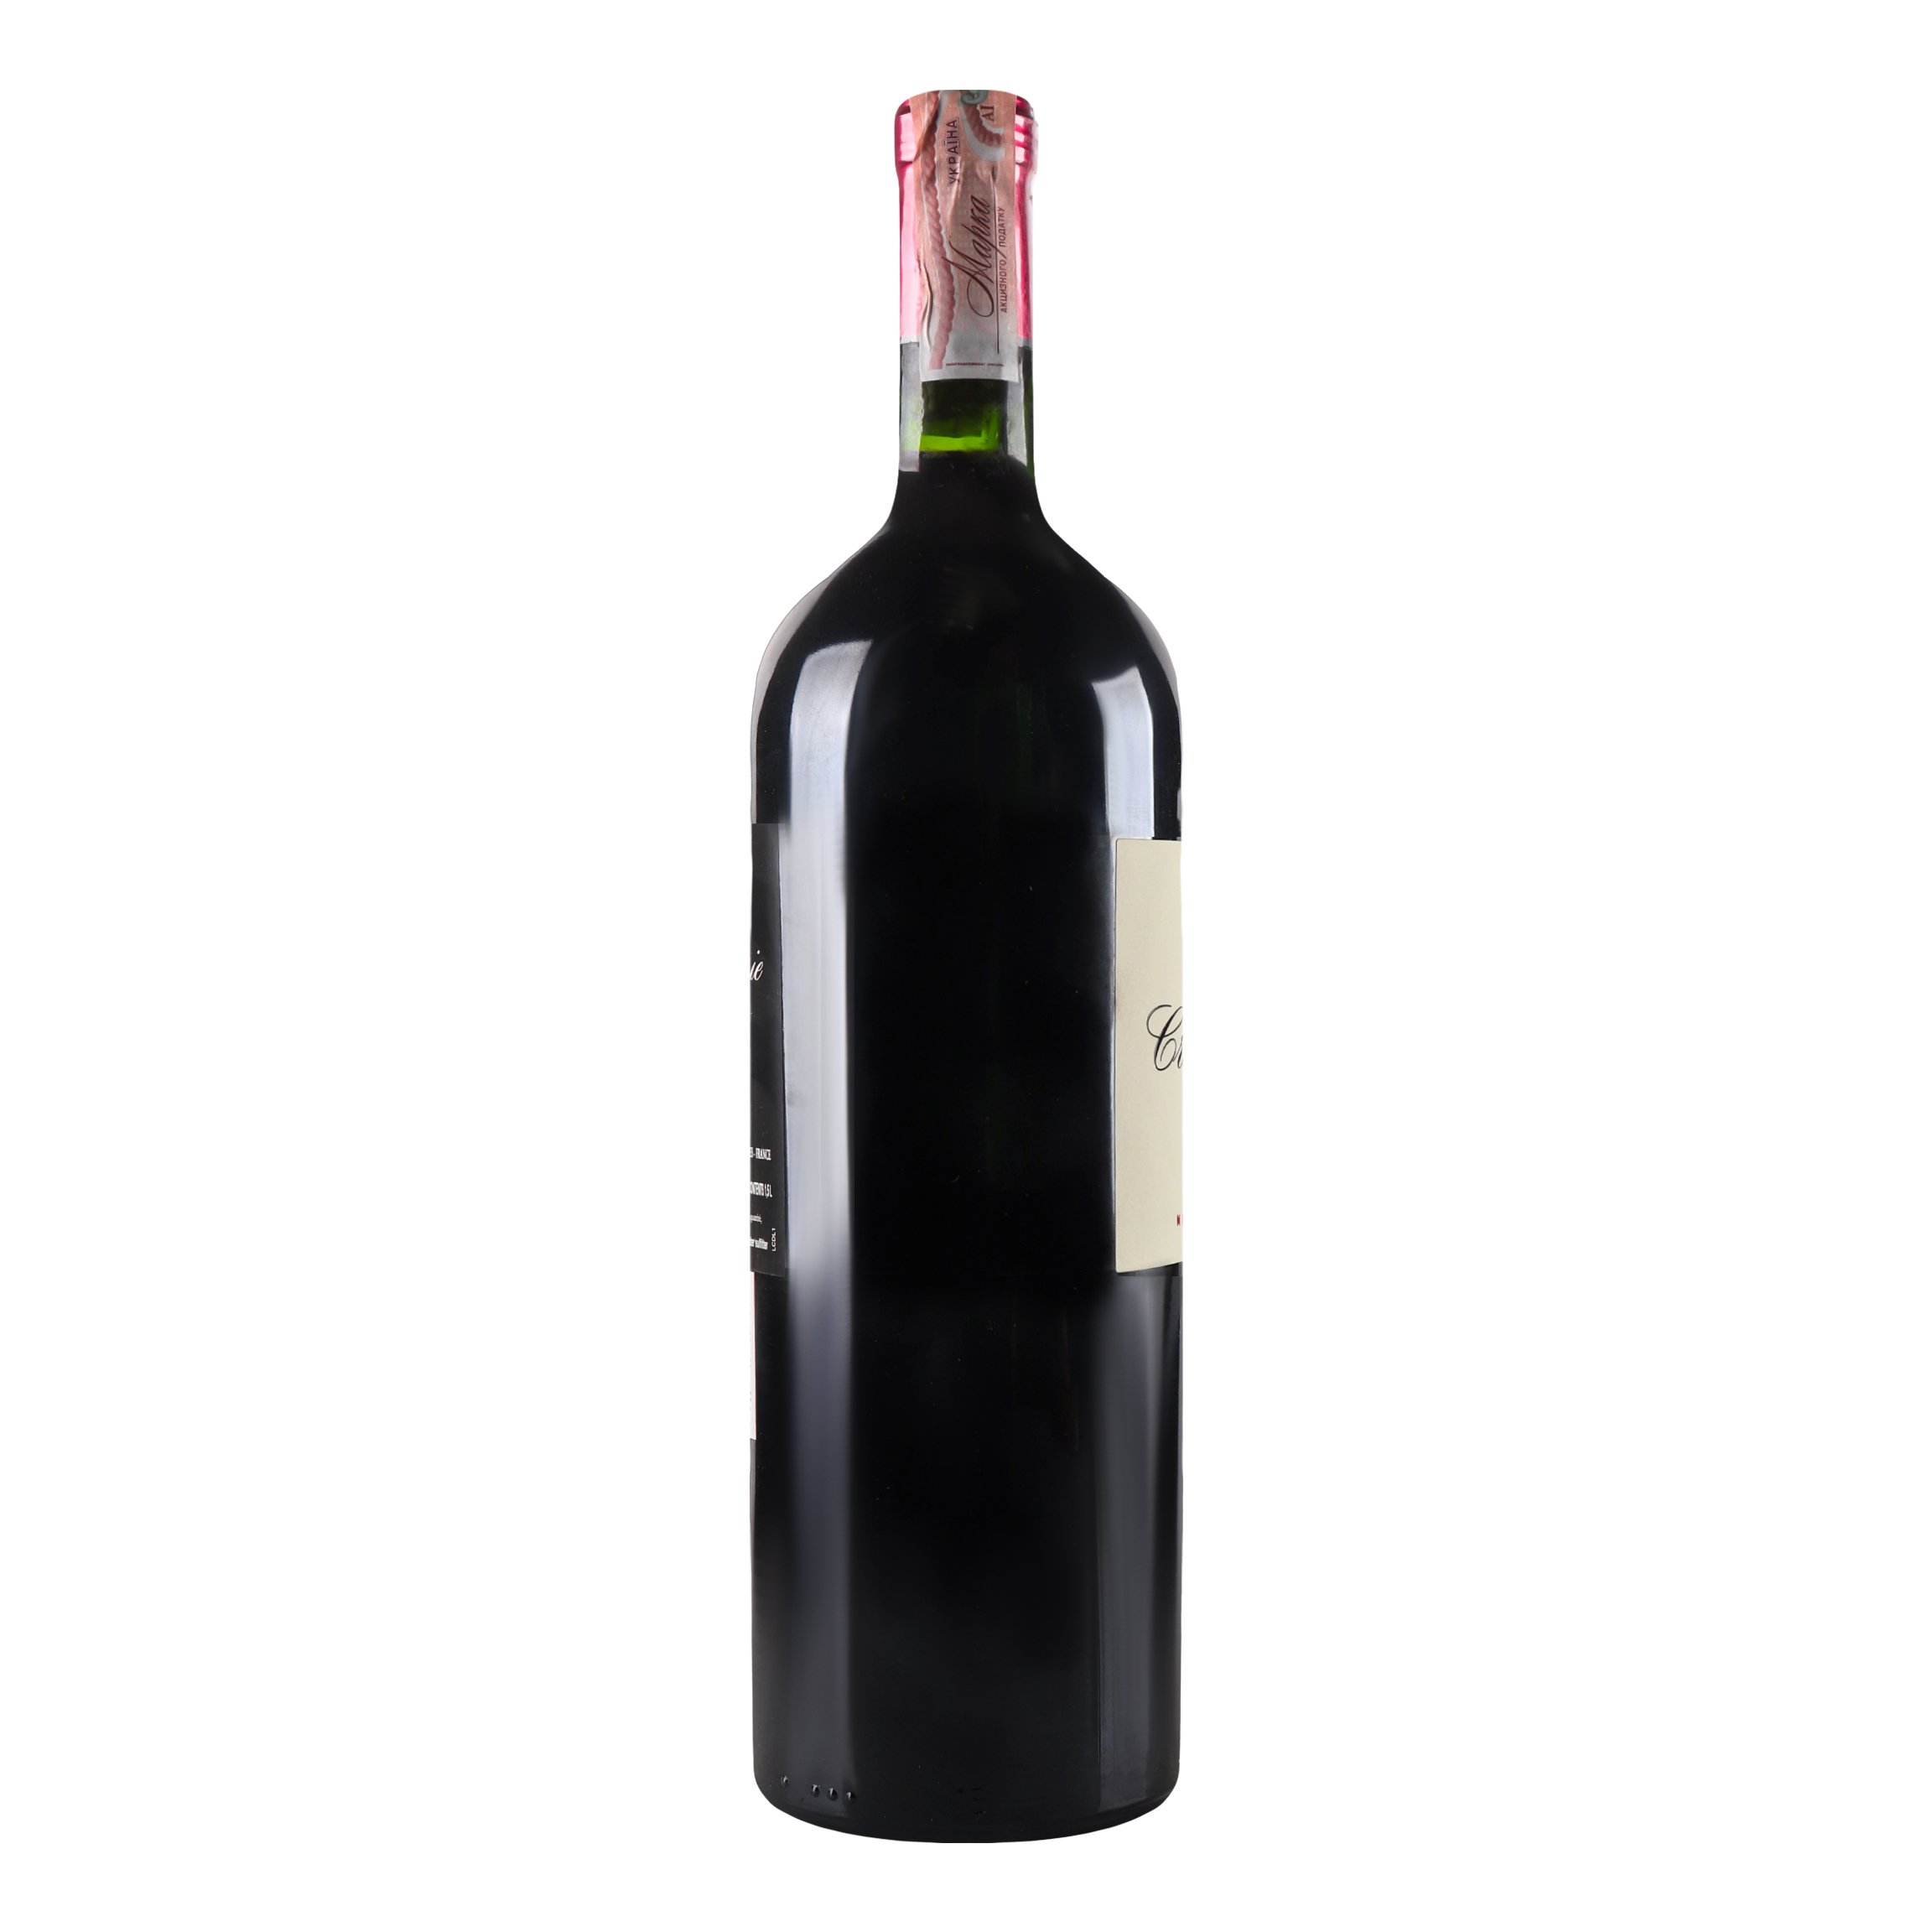 Вино Chateau Croix de Labrie Saint Emilion Grand Cru 2017 AOC, красное, сухое, 14%, 1,5 л (819350) - фото 2